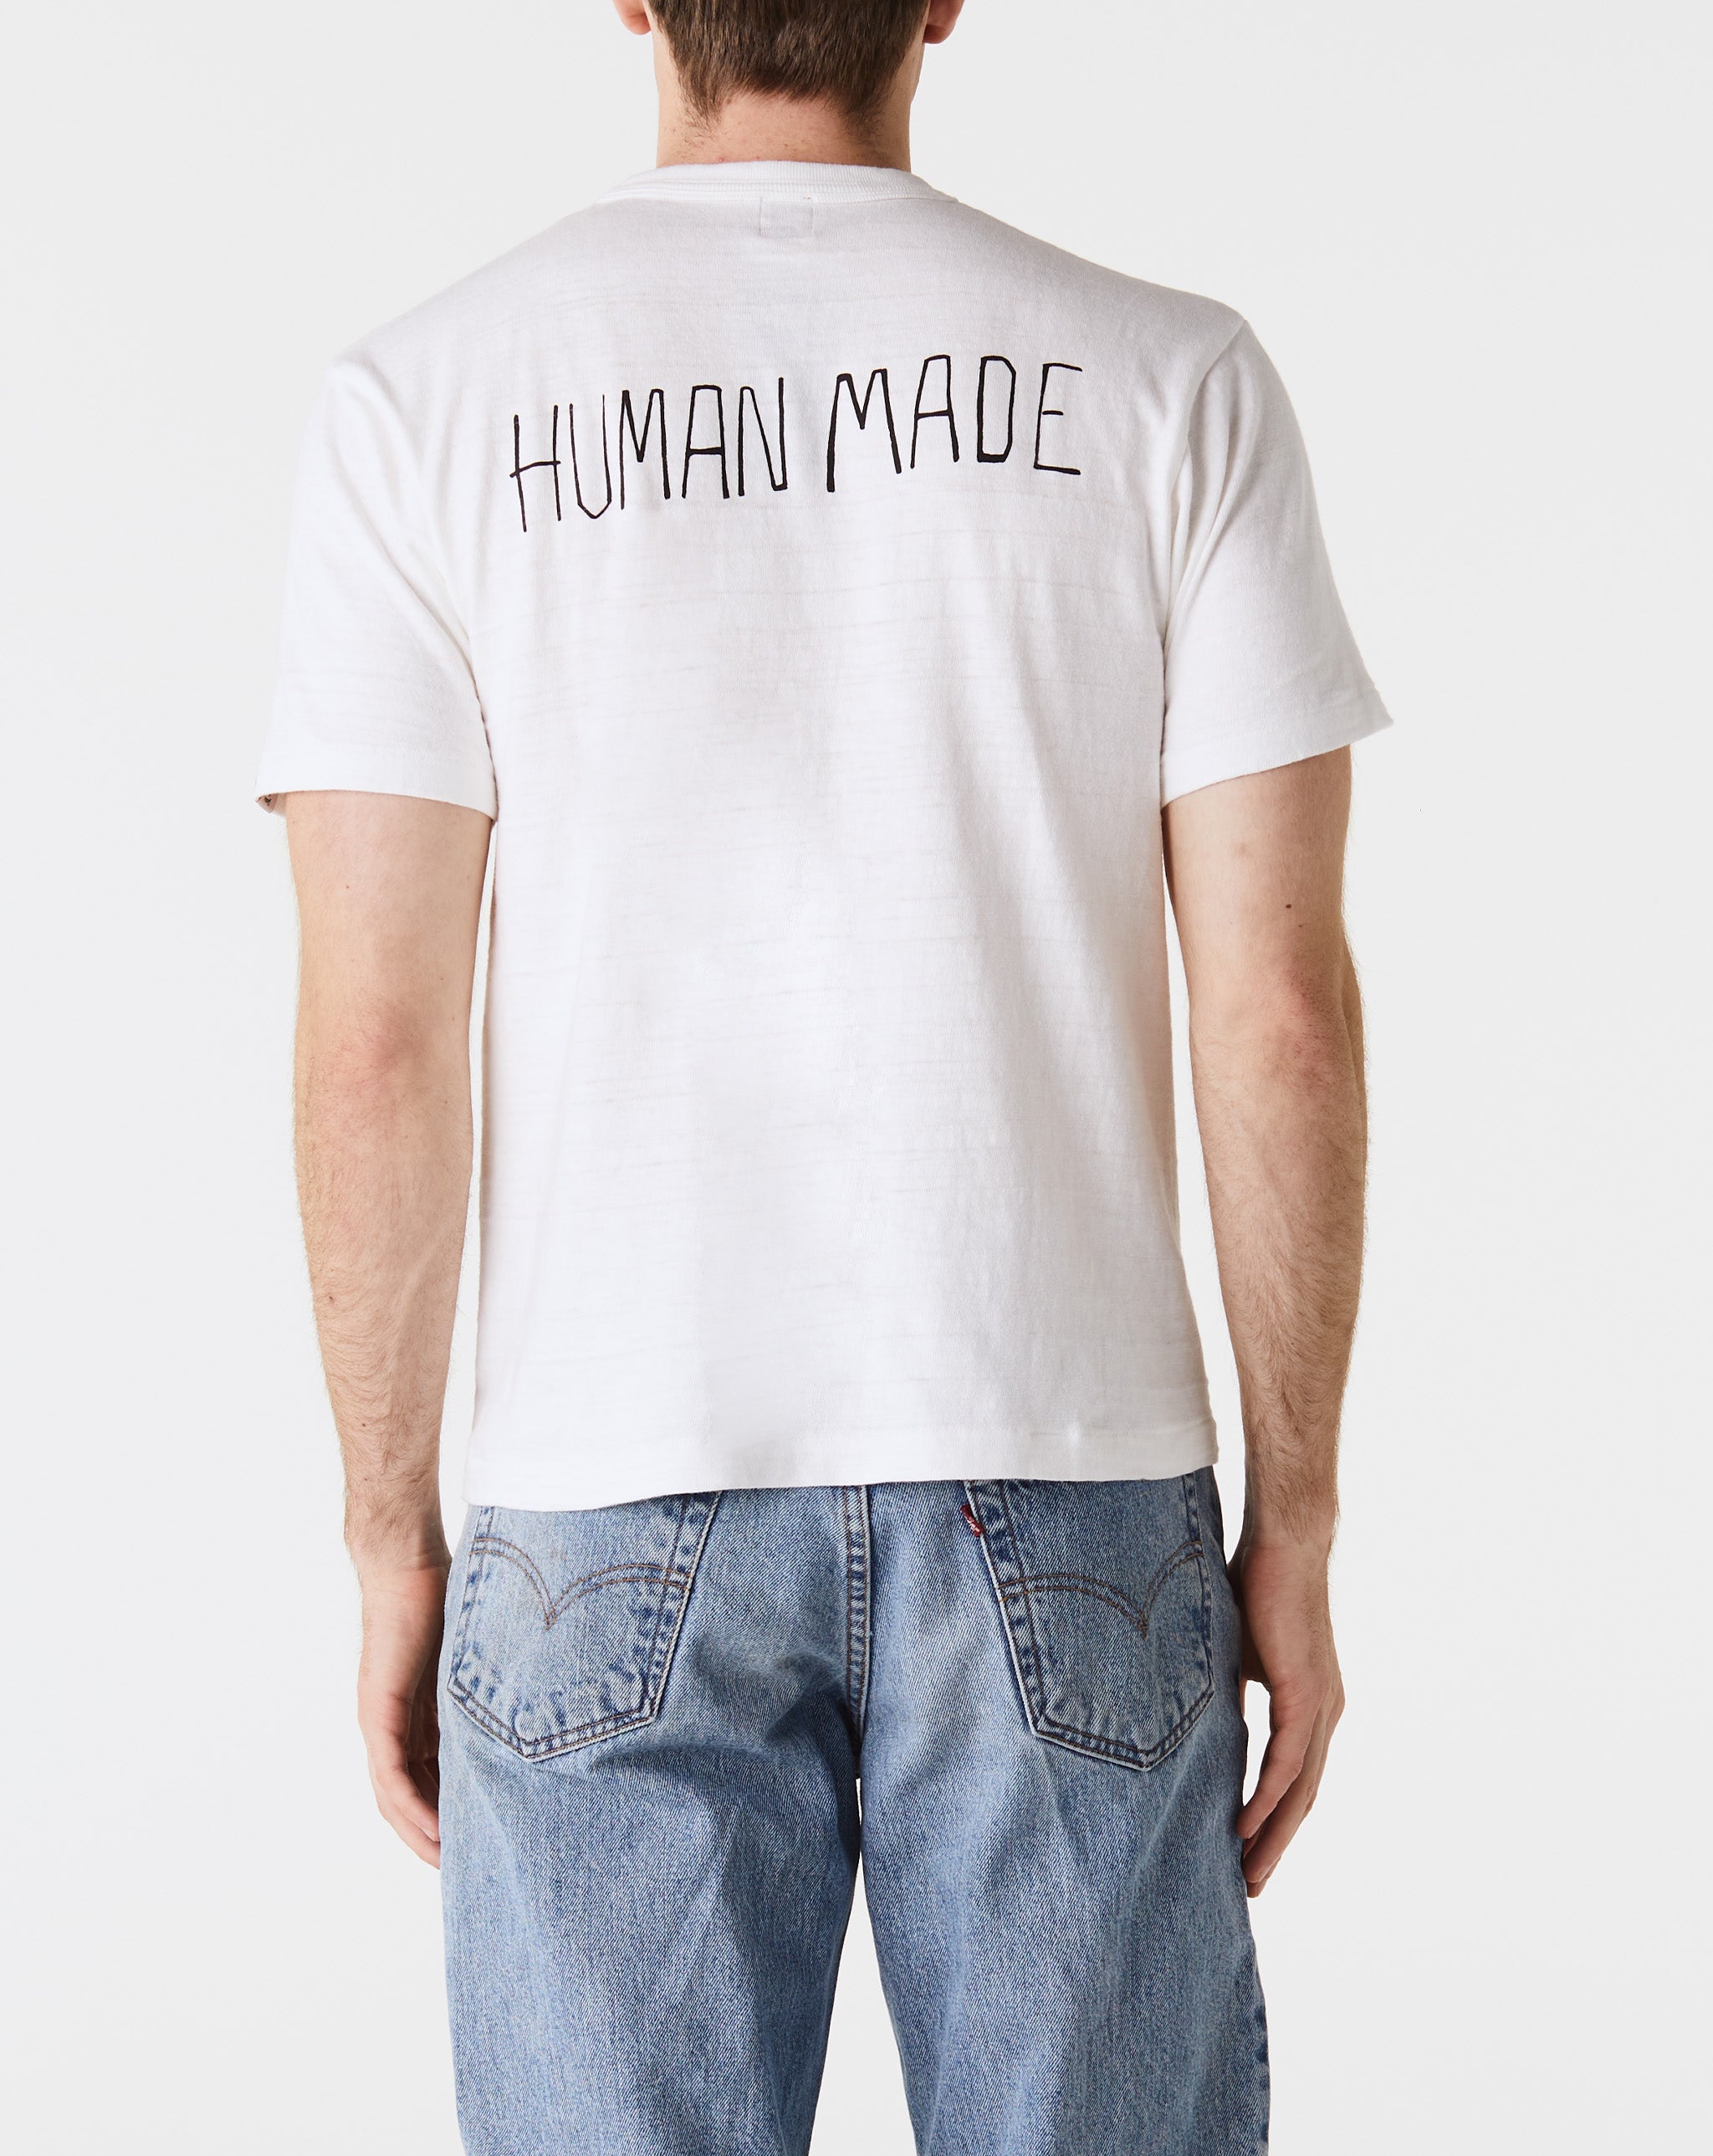 Human Made Graphic T-Shirt #1  - Cheap Urlfreeze Jordan outlet